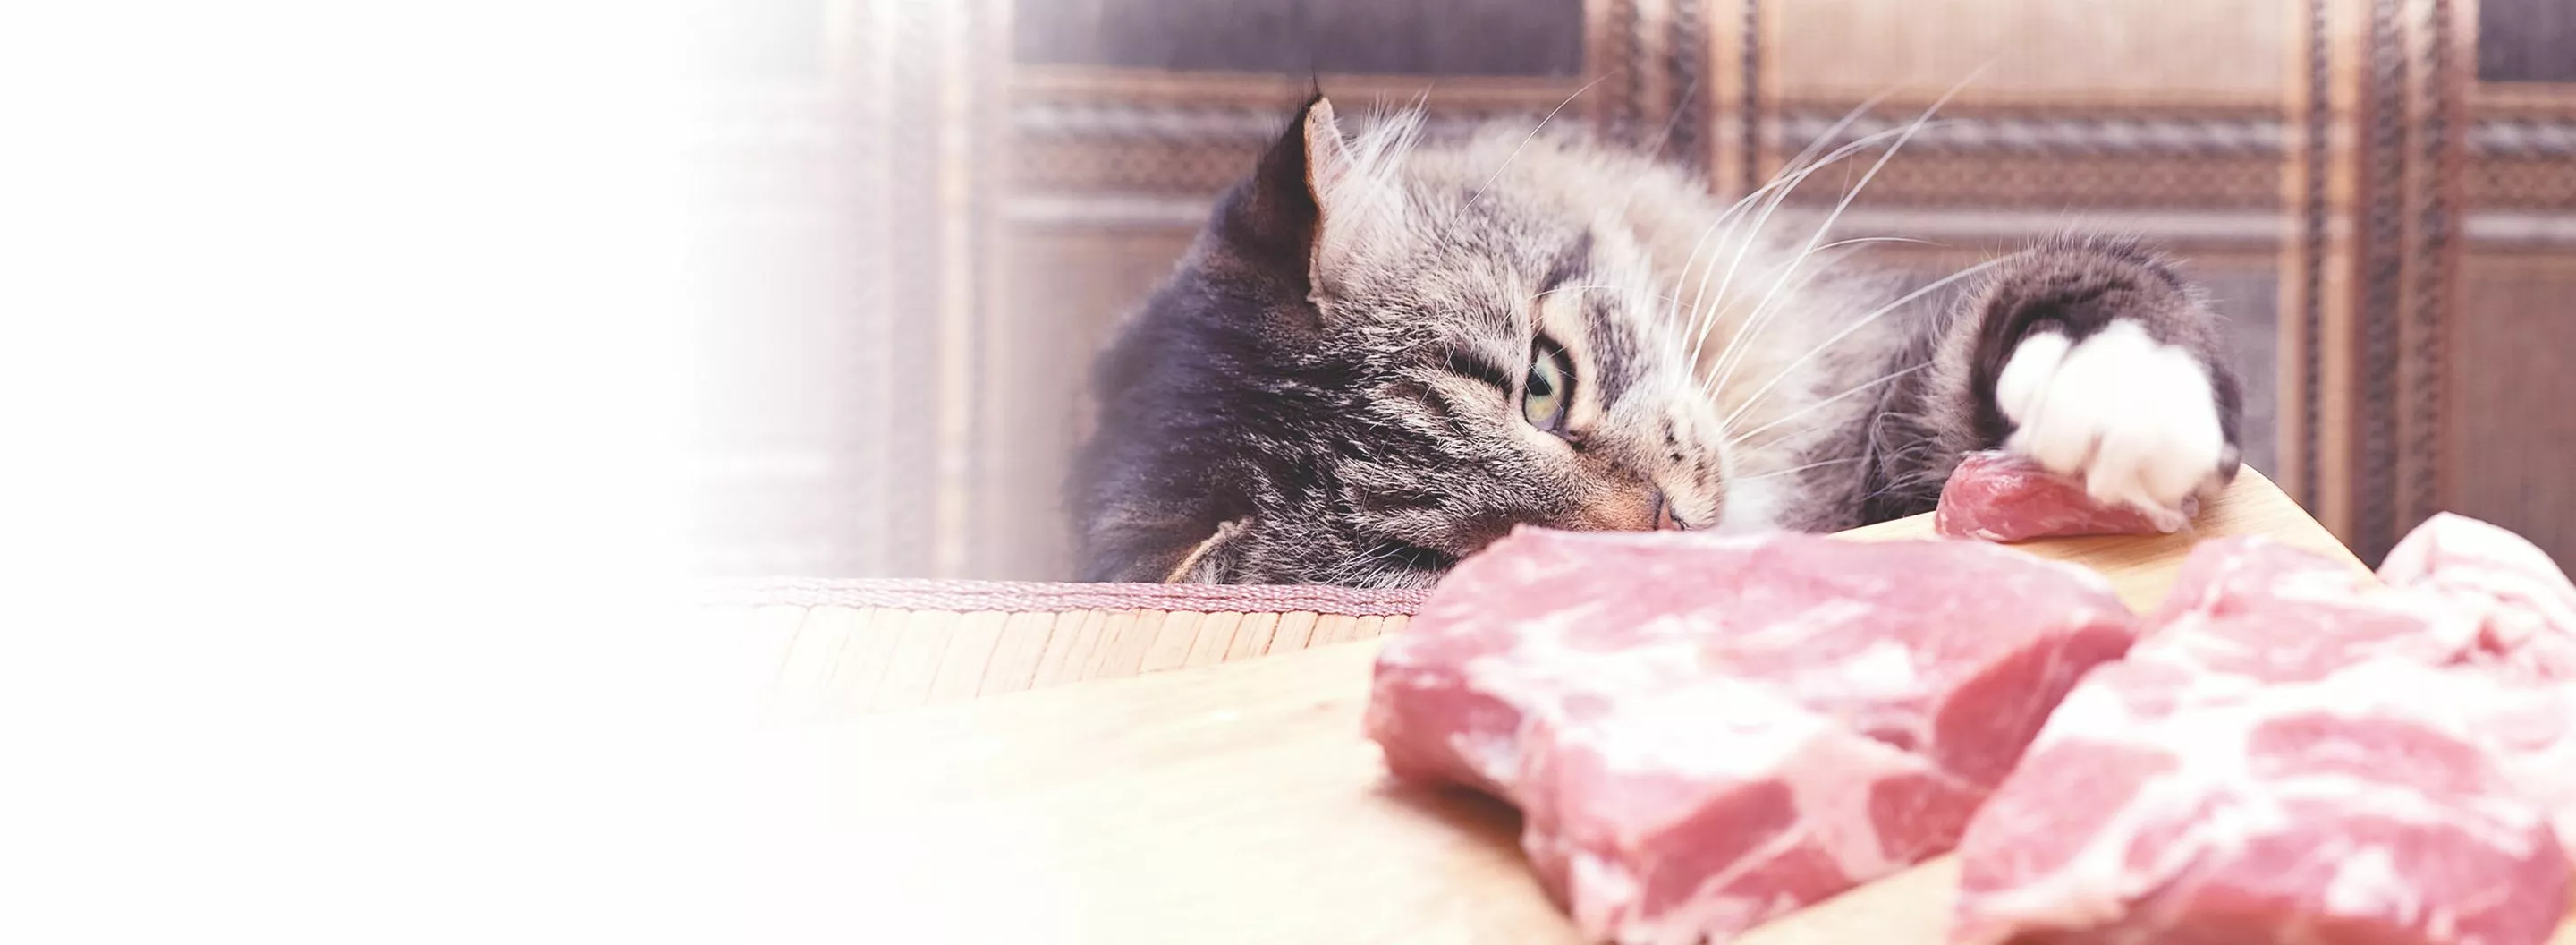 Kedi mamasında optimum et miktarı